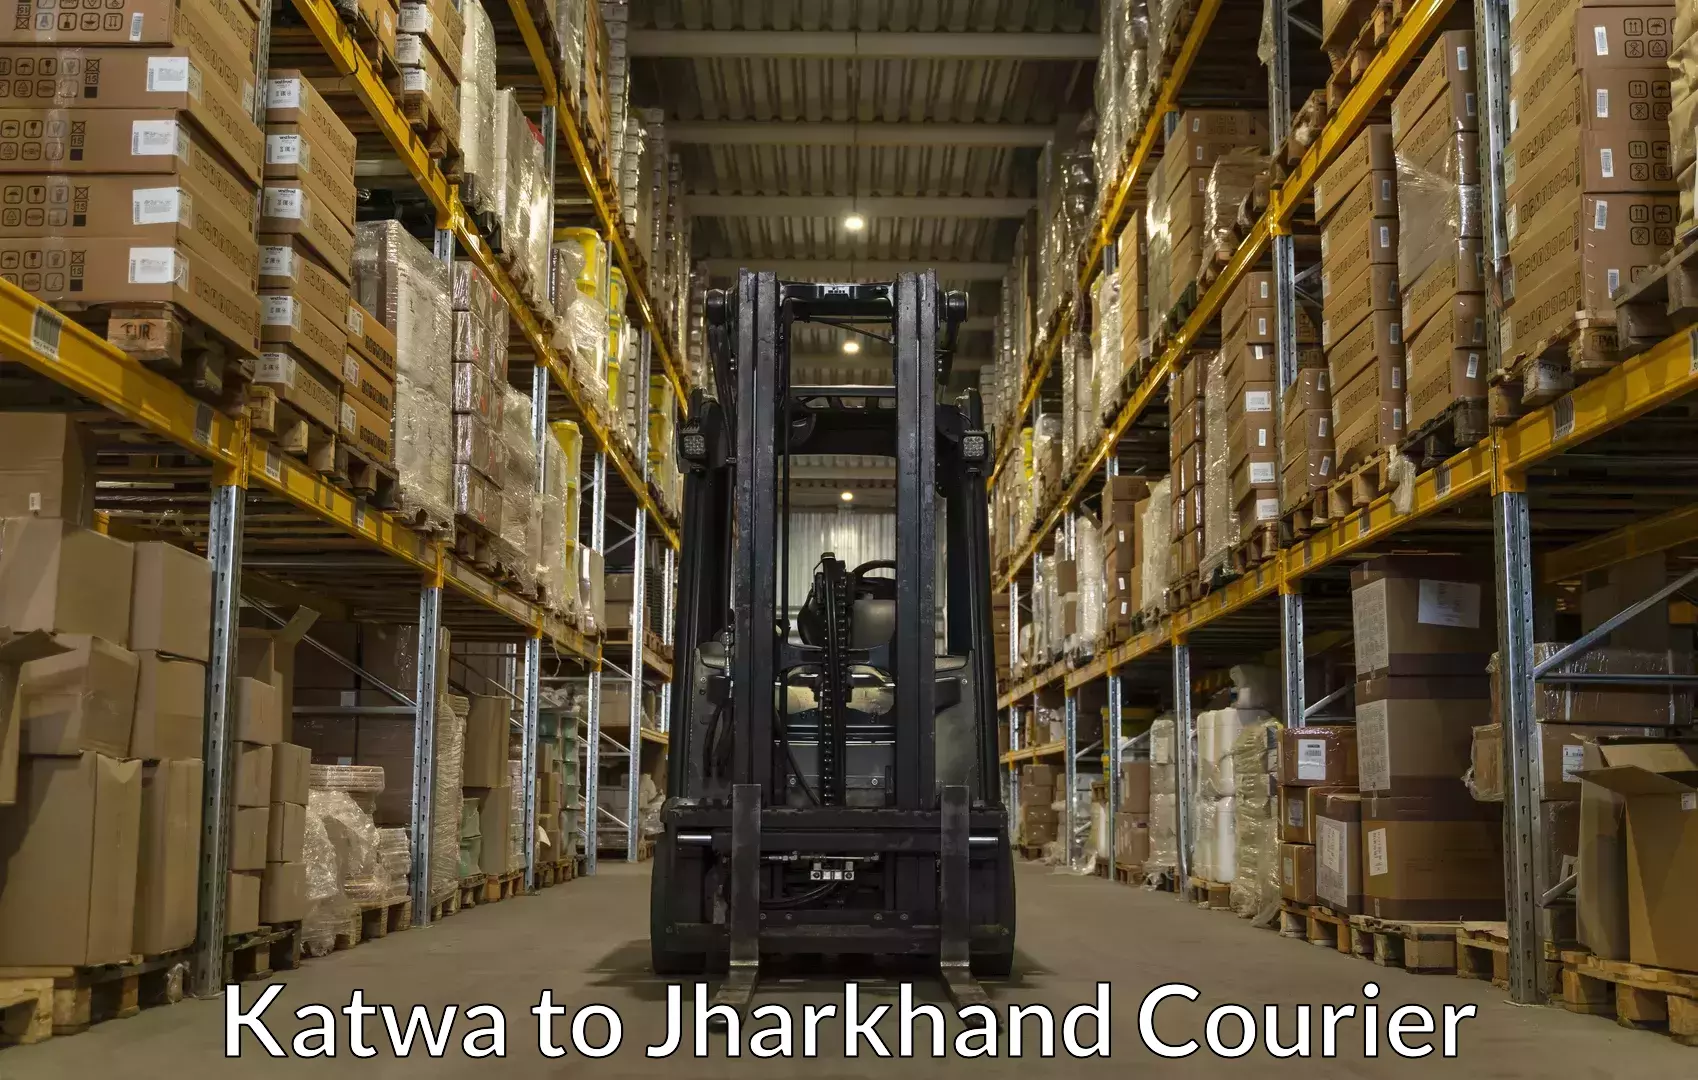 Baggage shipping experts Katwa to Jamshedpur